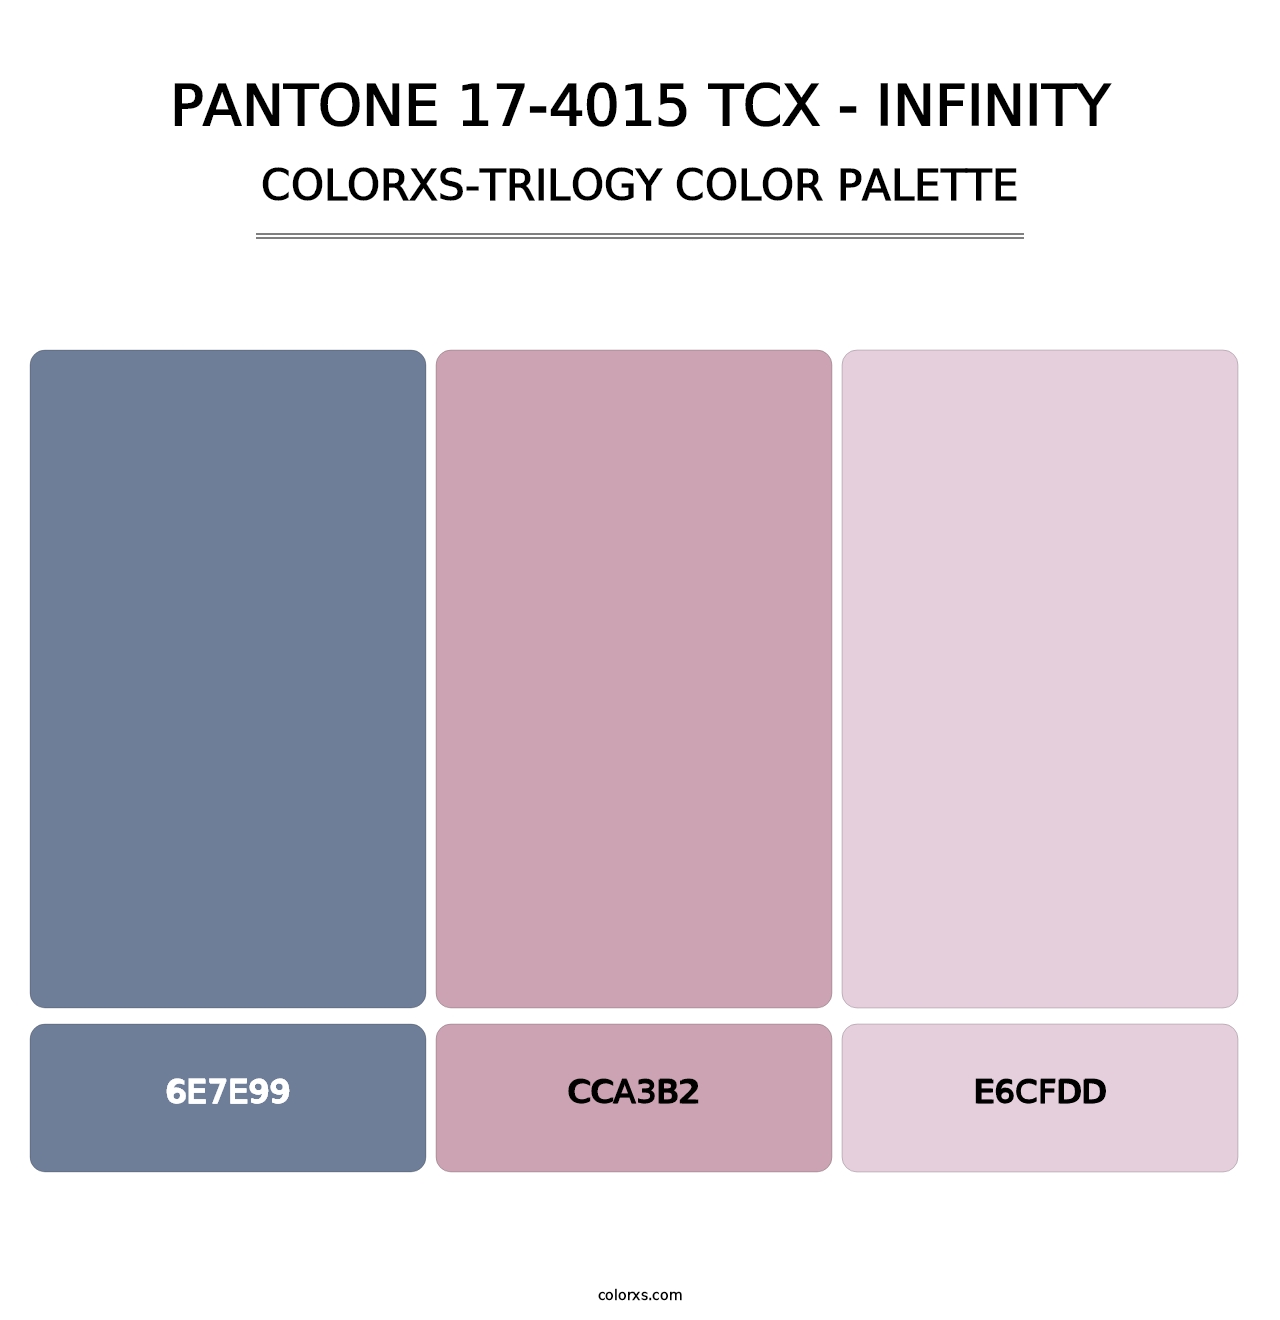 PANTONE 17-4015 TCX - Infinity - Colorxs Trilogy Palette